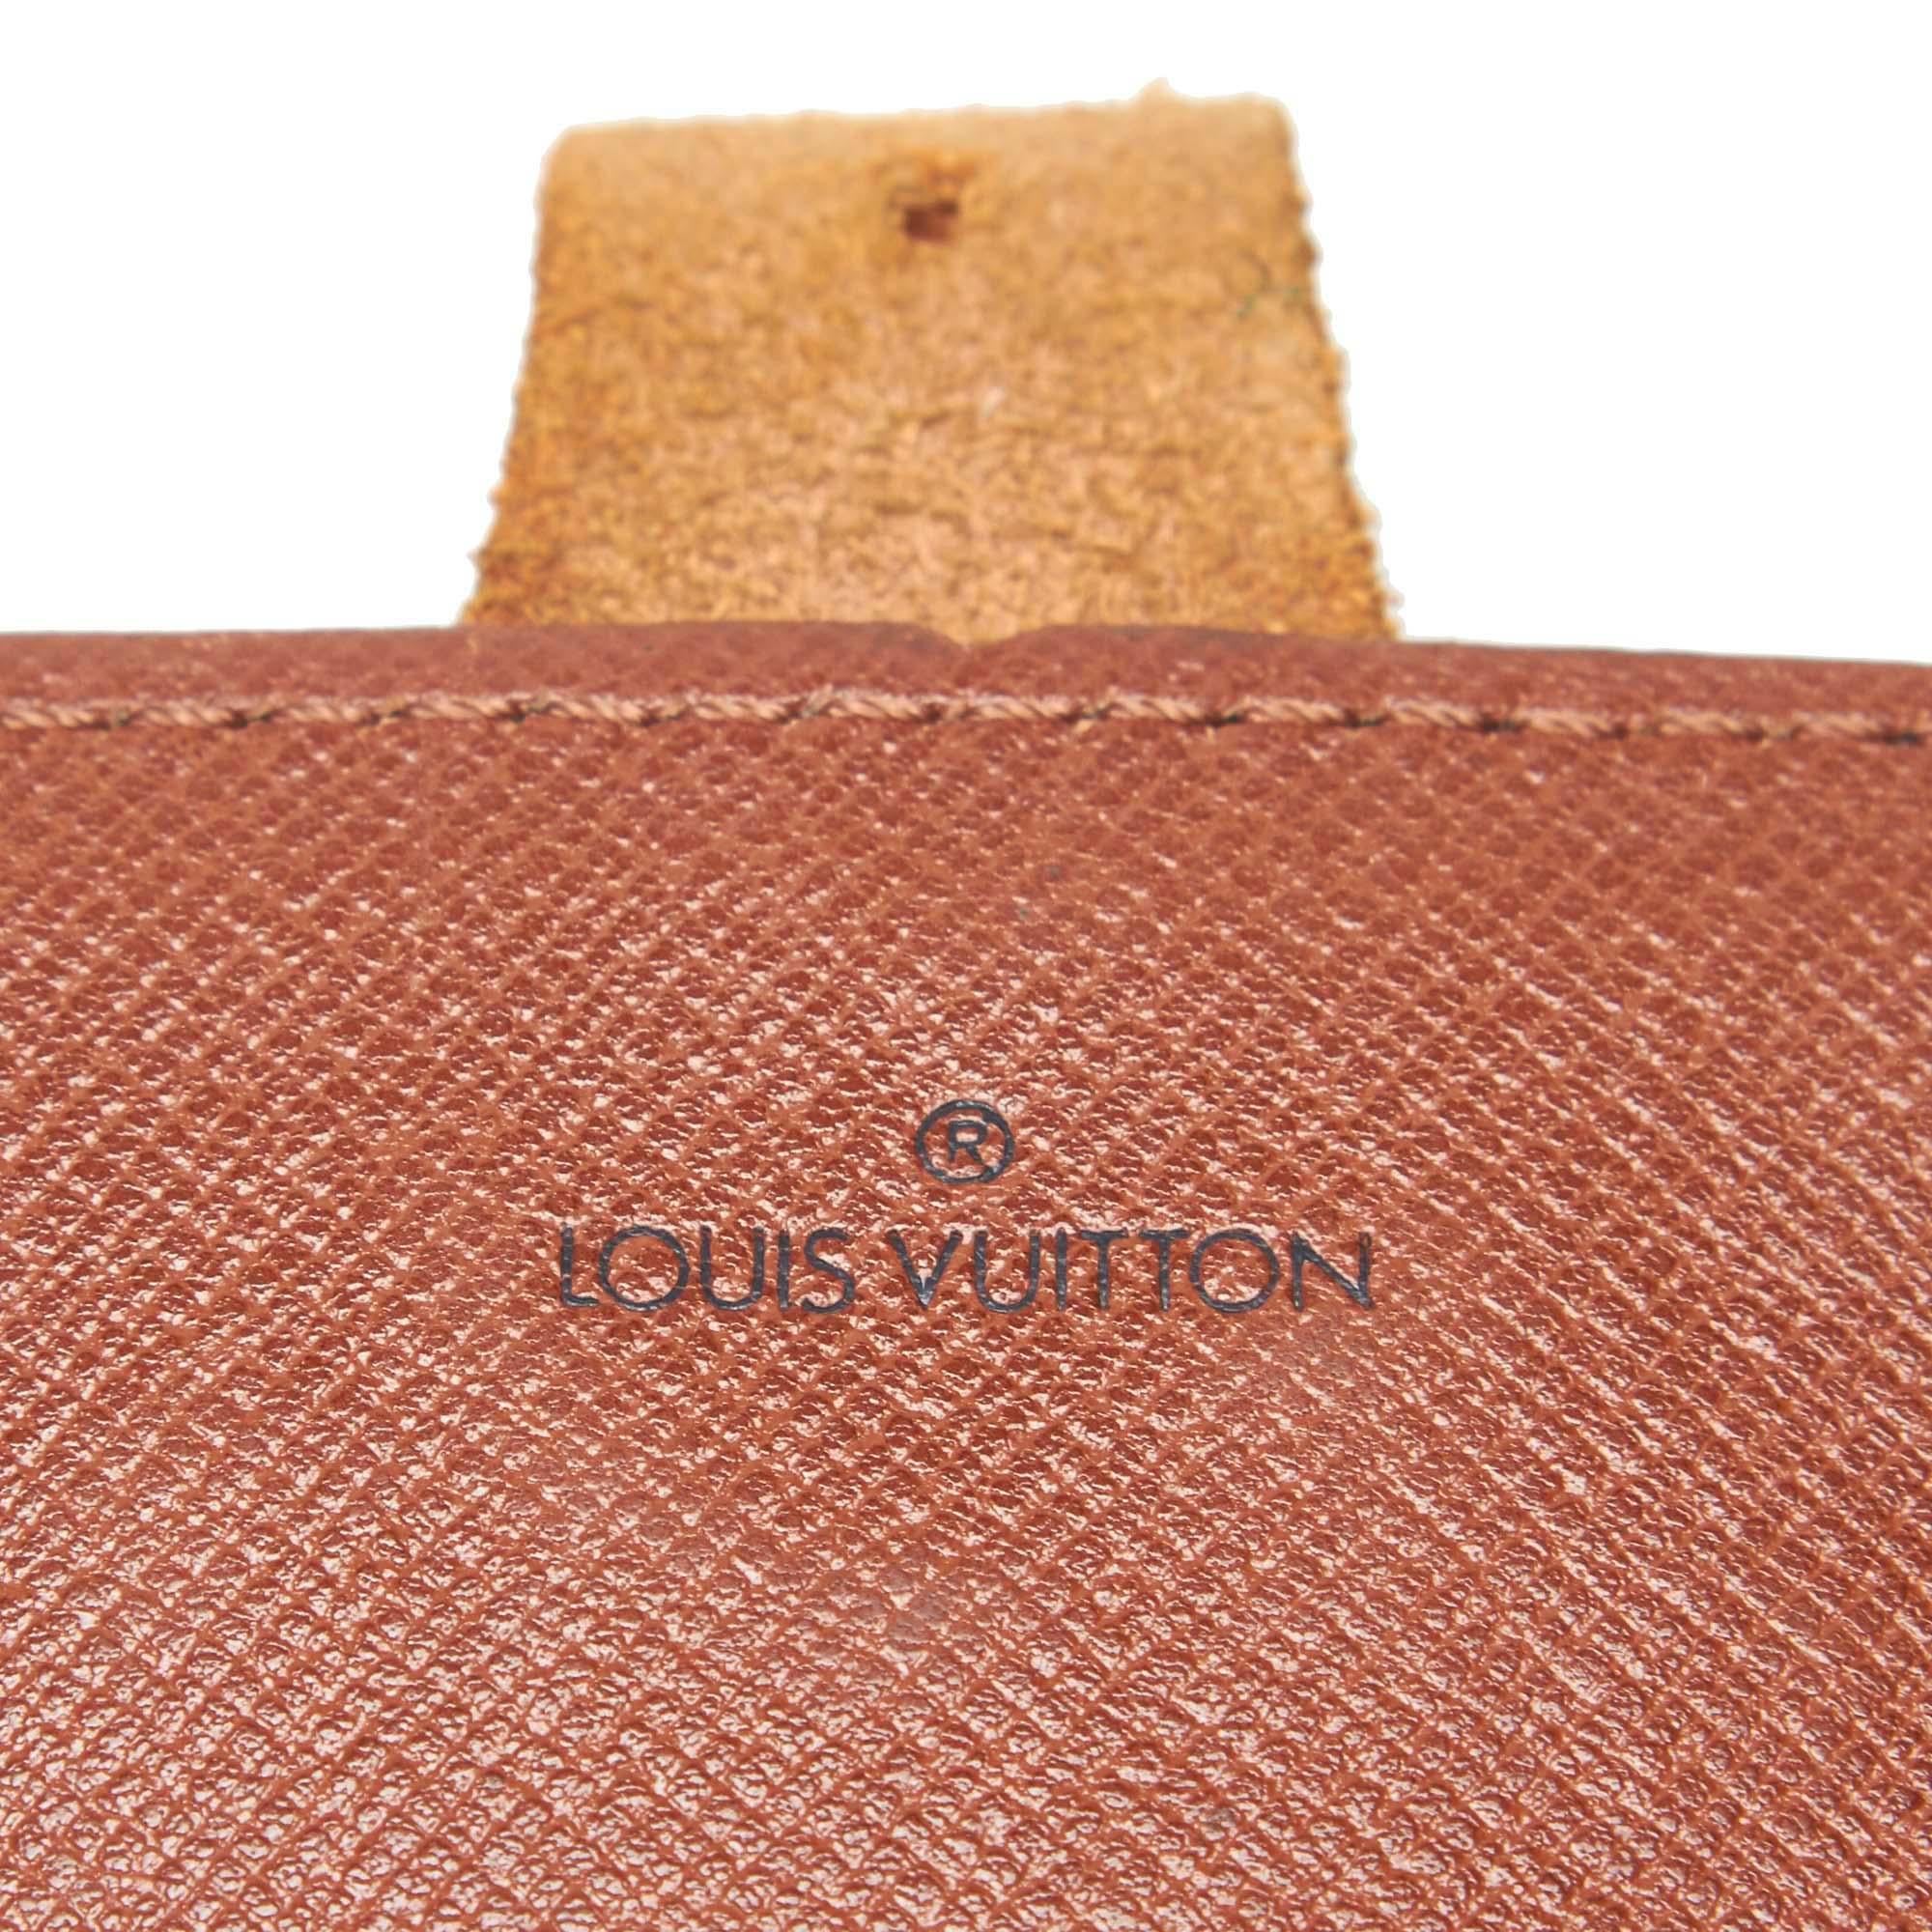 Vintage Authentic Louis Vuitton Brown Cartouchiere GM France LARGE  For Sale 2